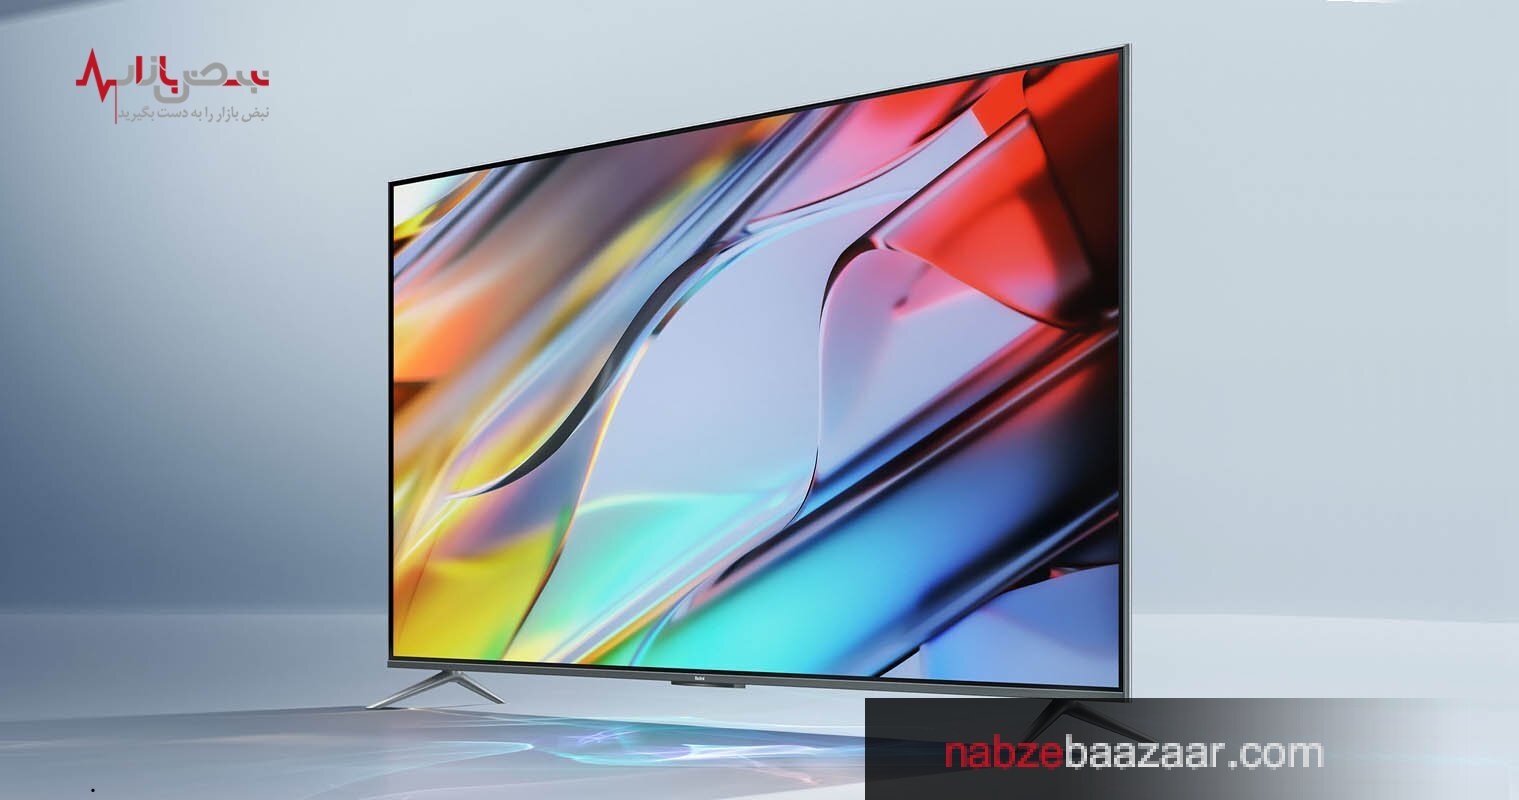 معرفی تلویزیون هوشمند ردمی اسمارت TV X ۲۰۲۲ مدل ۵۰ اینچی با قیمت ۳۶۱ دلار